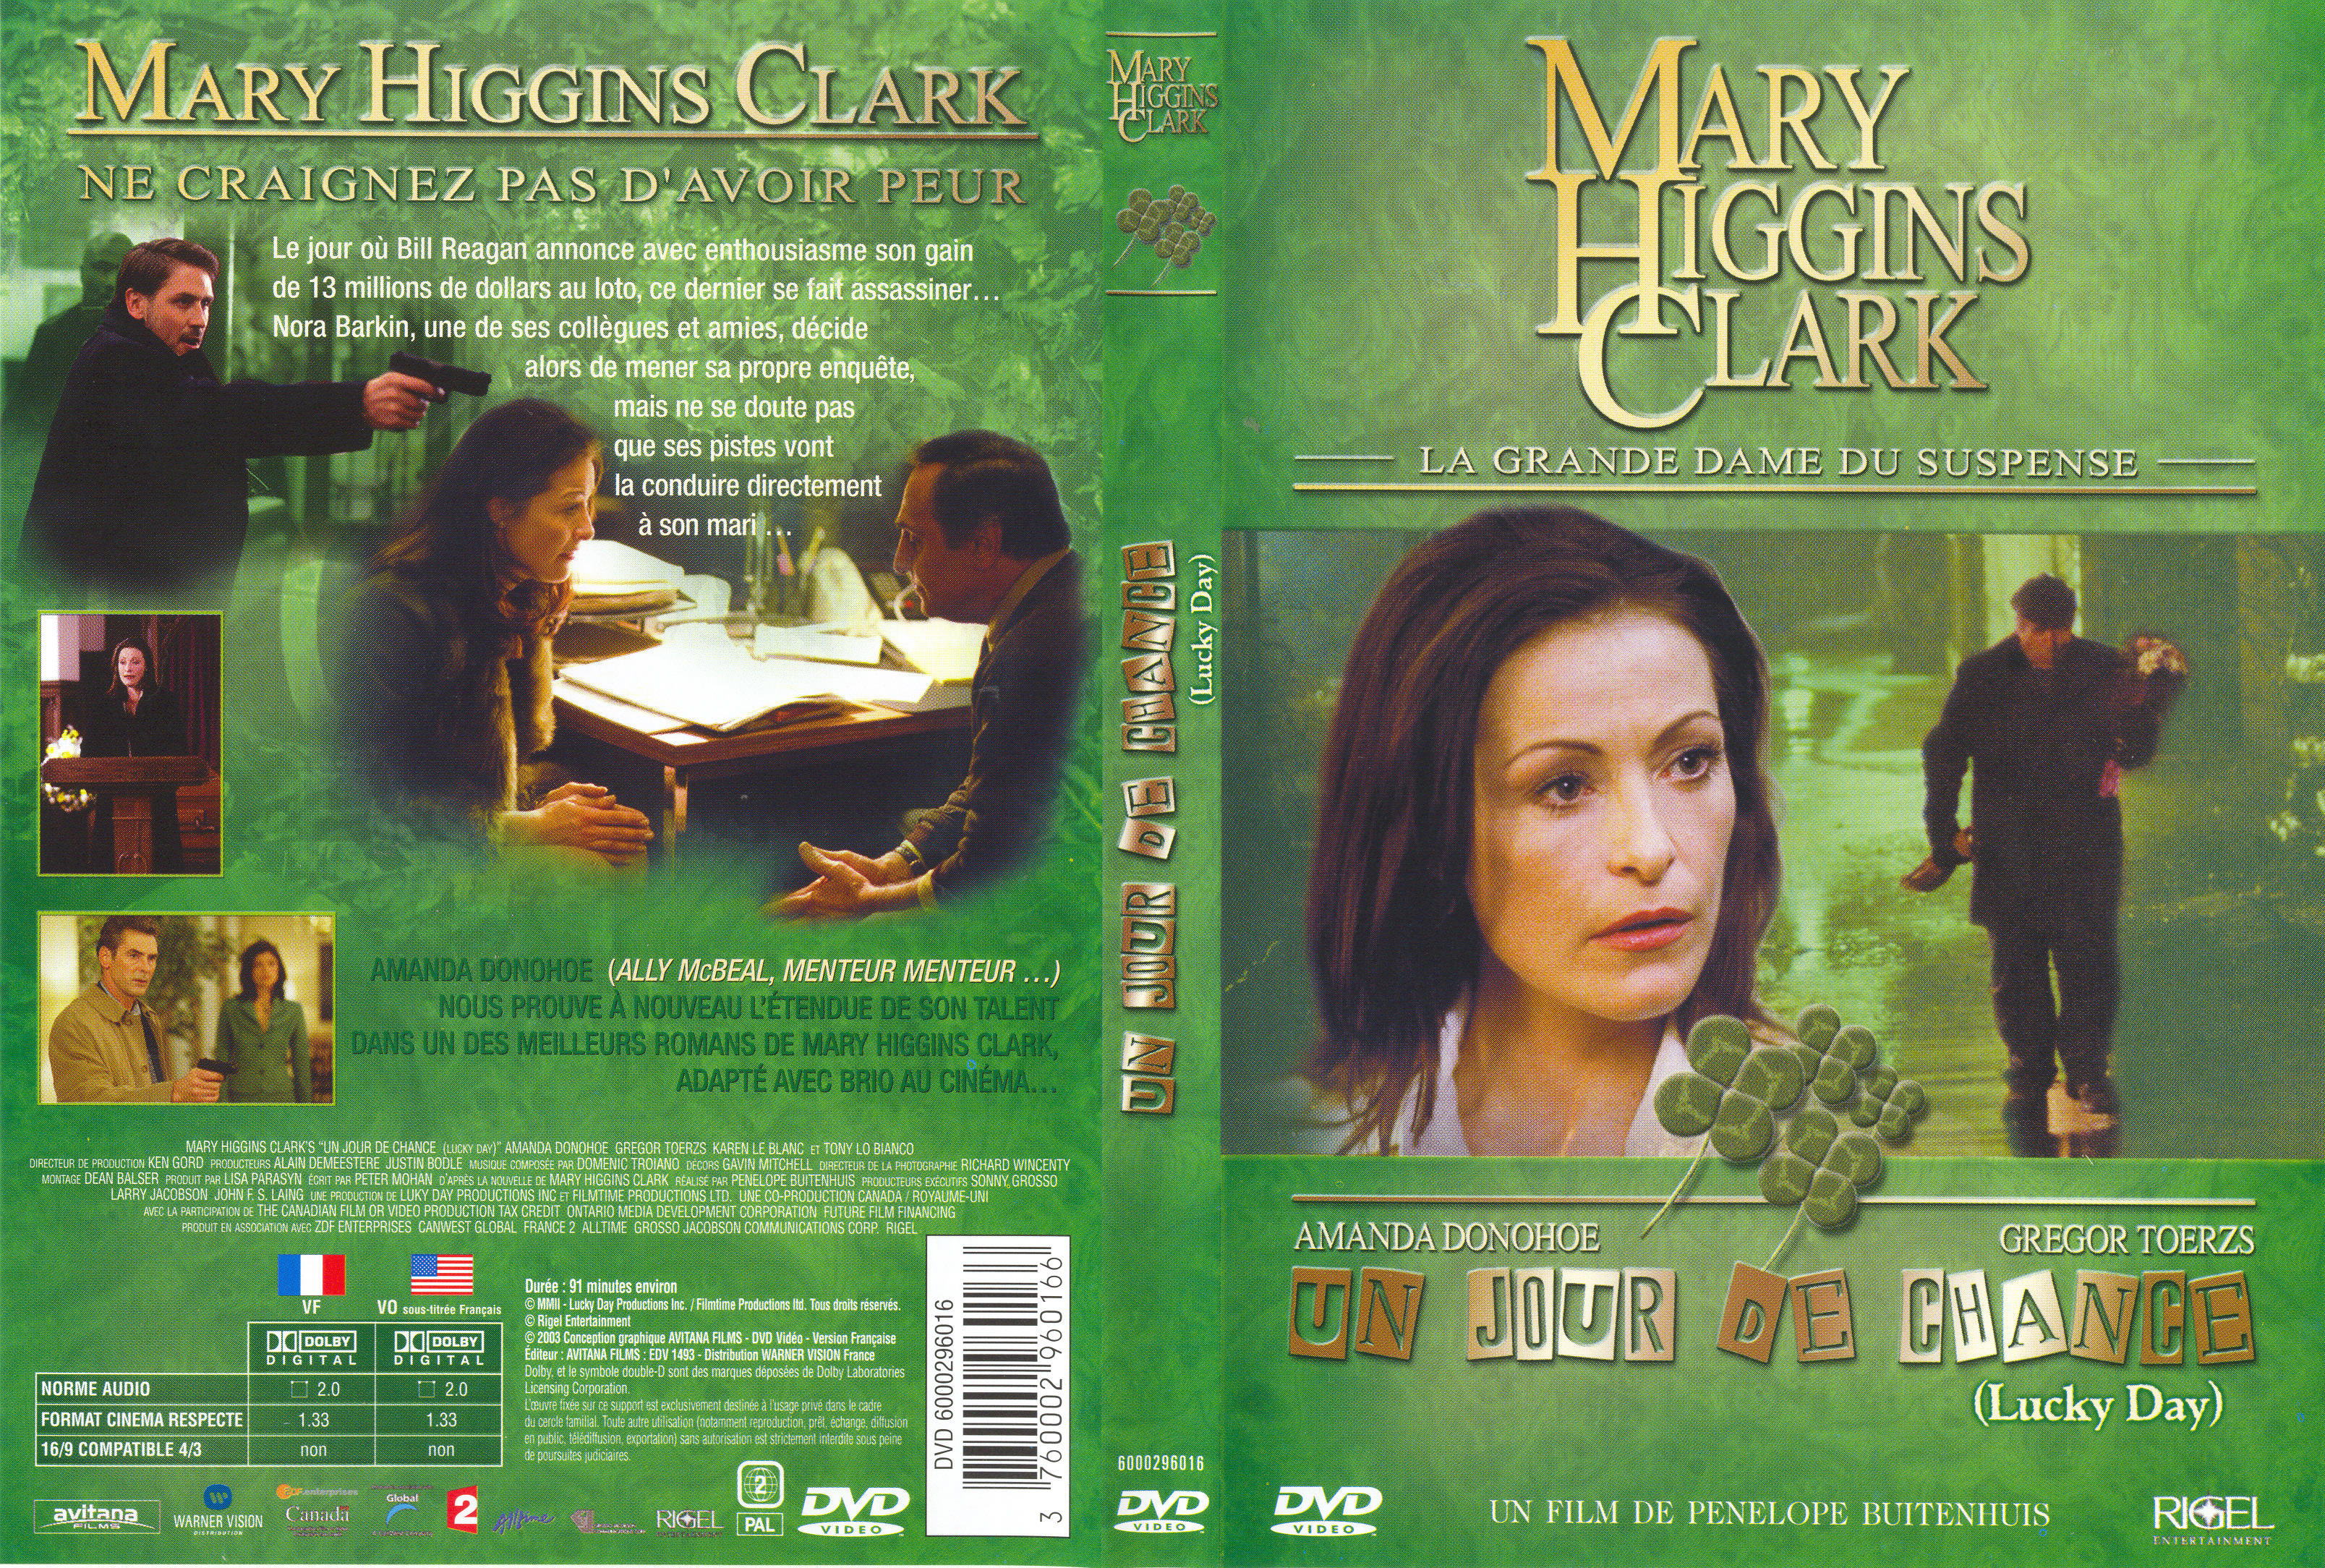 Jaquette DVD Mary Higgins Clark - Un jour de chance